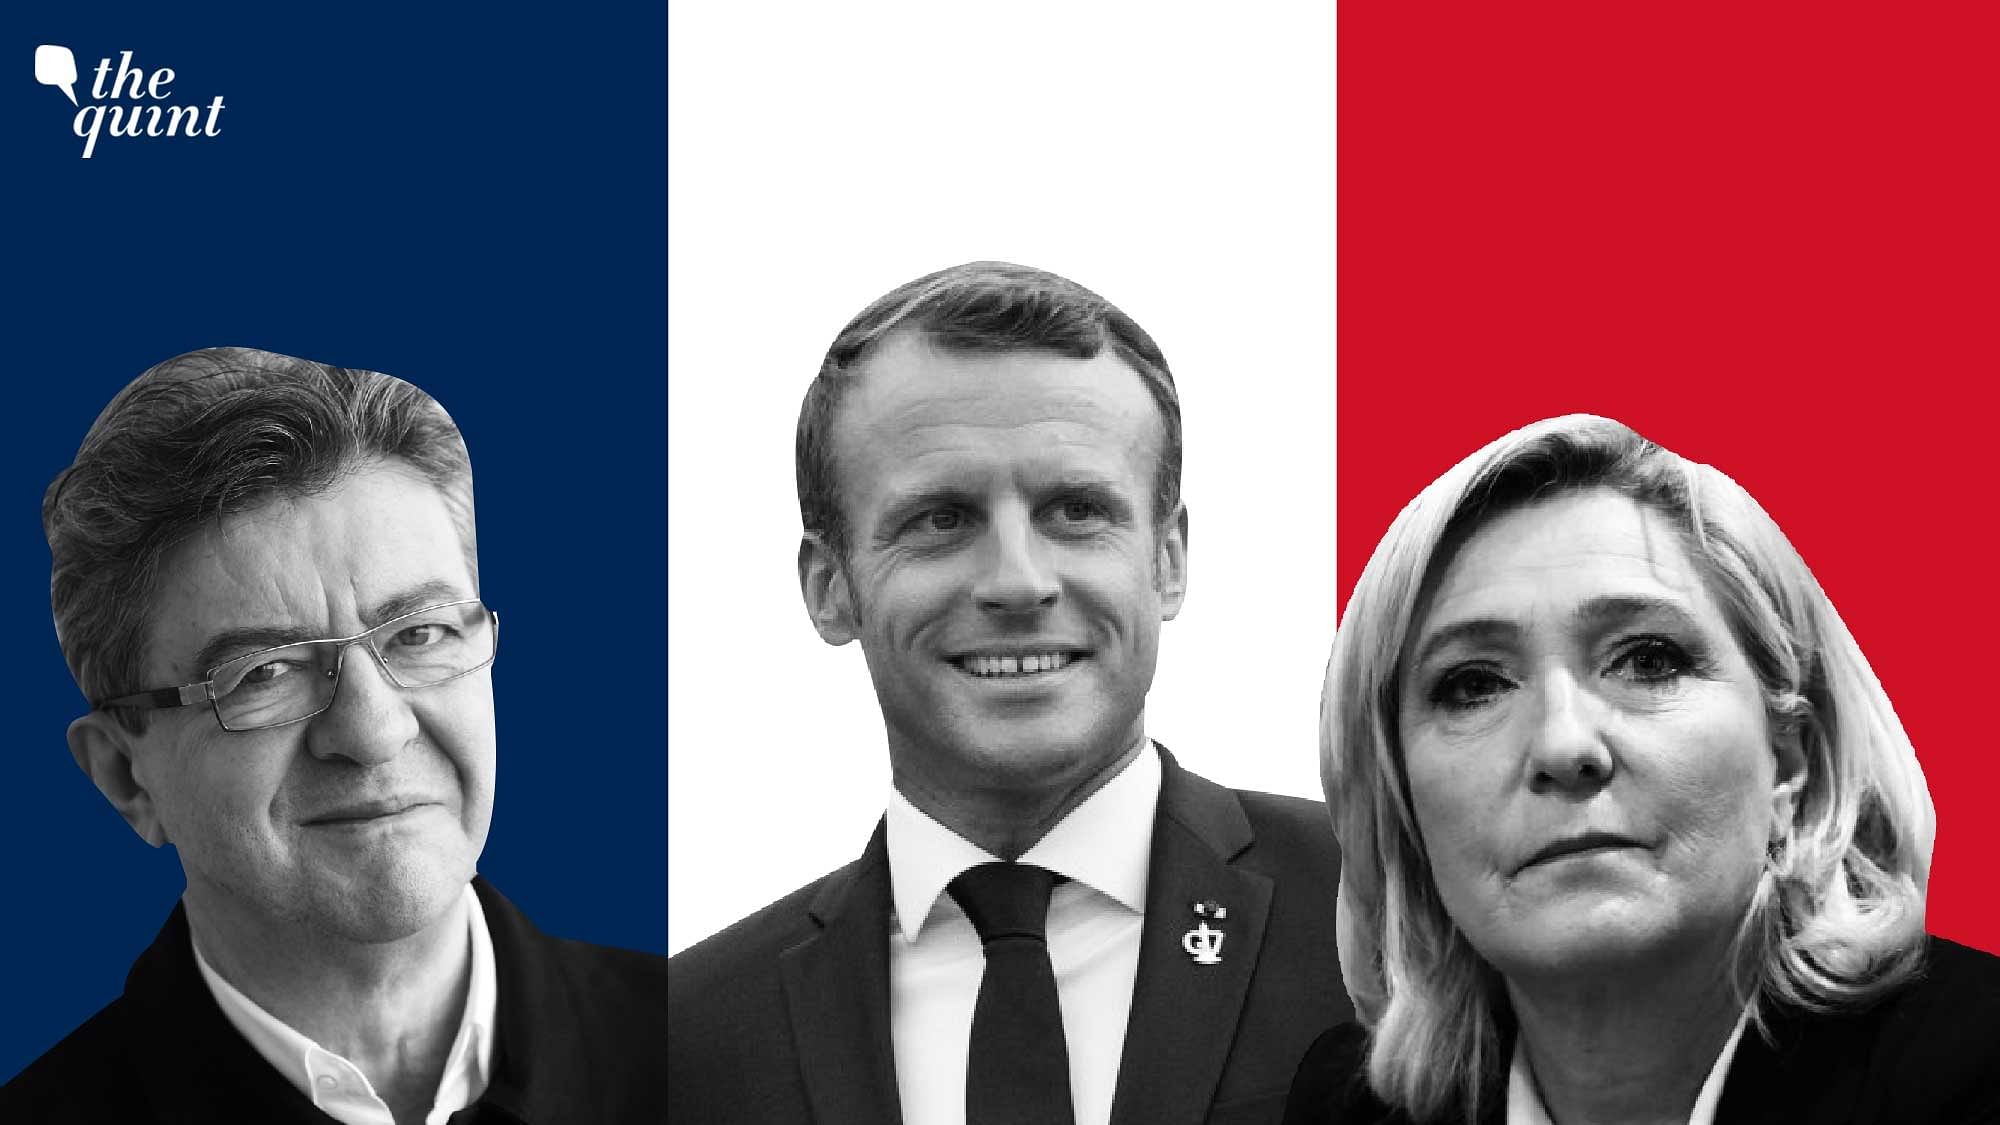 <div class="paragraphs"><p>Jean-Luc Mélenchon (left),&nbsp;Emmanuel Macron (centre), and Marine Le Pen (right)</p></div>